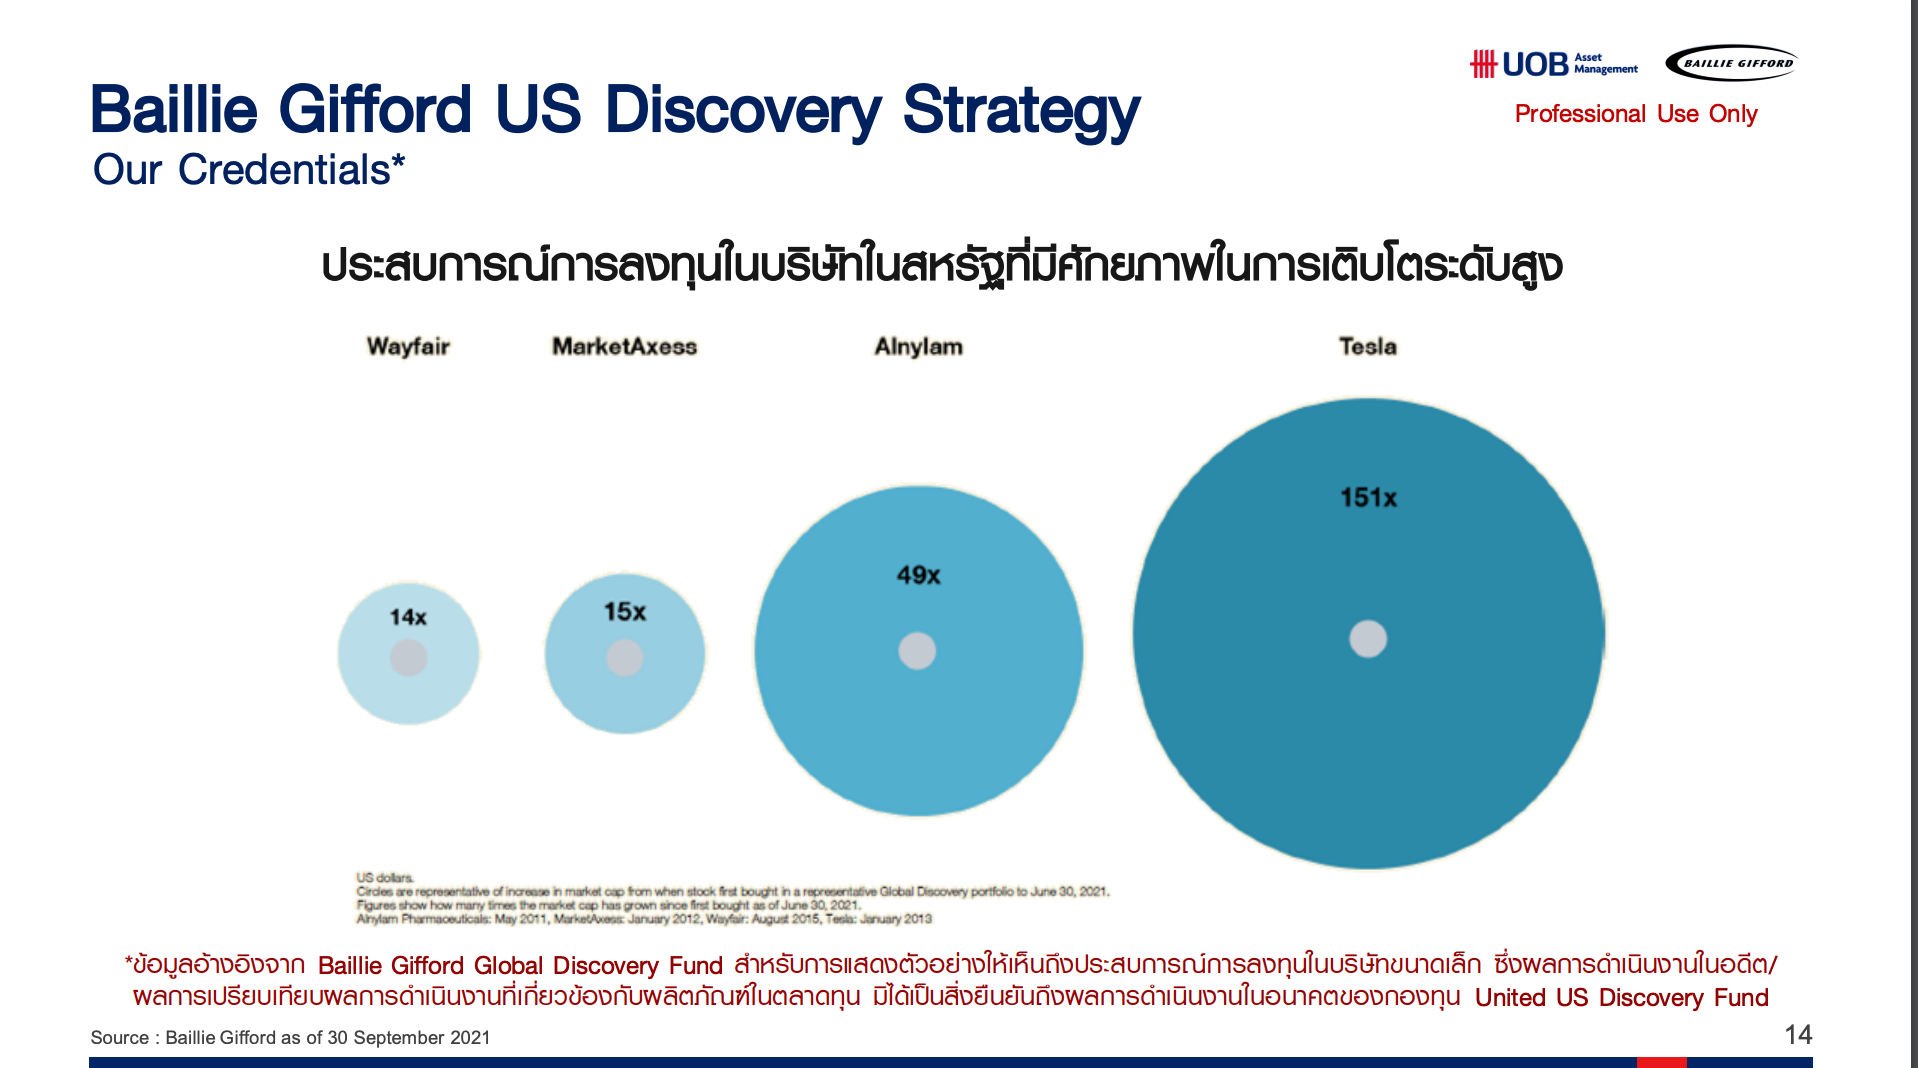 ทีมงานการลงทุนของกองทุน US Discovery เป็นทีมงานเดียวกับ Global Discovery ซึ่งมีการค้นพบว่าหุ้น 20 บริษัทที่ทำผลงานได้ดีที่สุดผ่านการลงทุนในกลยุทธ์ Global Discovery มากกว่า 60% มาจากสหรัฐฯ ดังนั้นการแตกแขนงออกมาเหมือนการรีดศักยภาพทีมงานให้ดียิ่งขึ้น